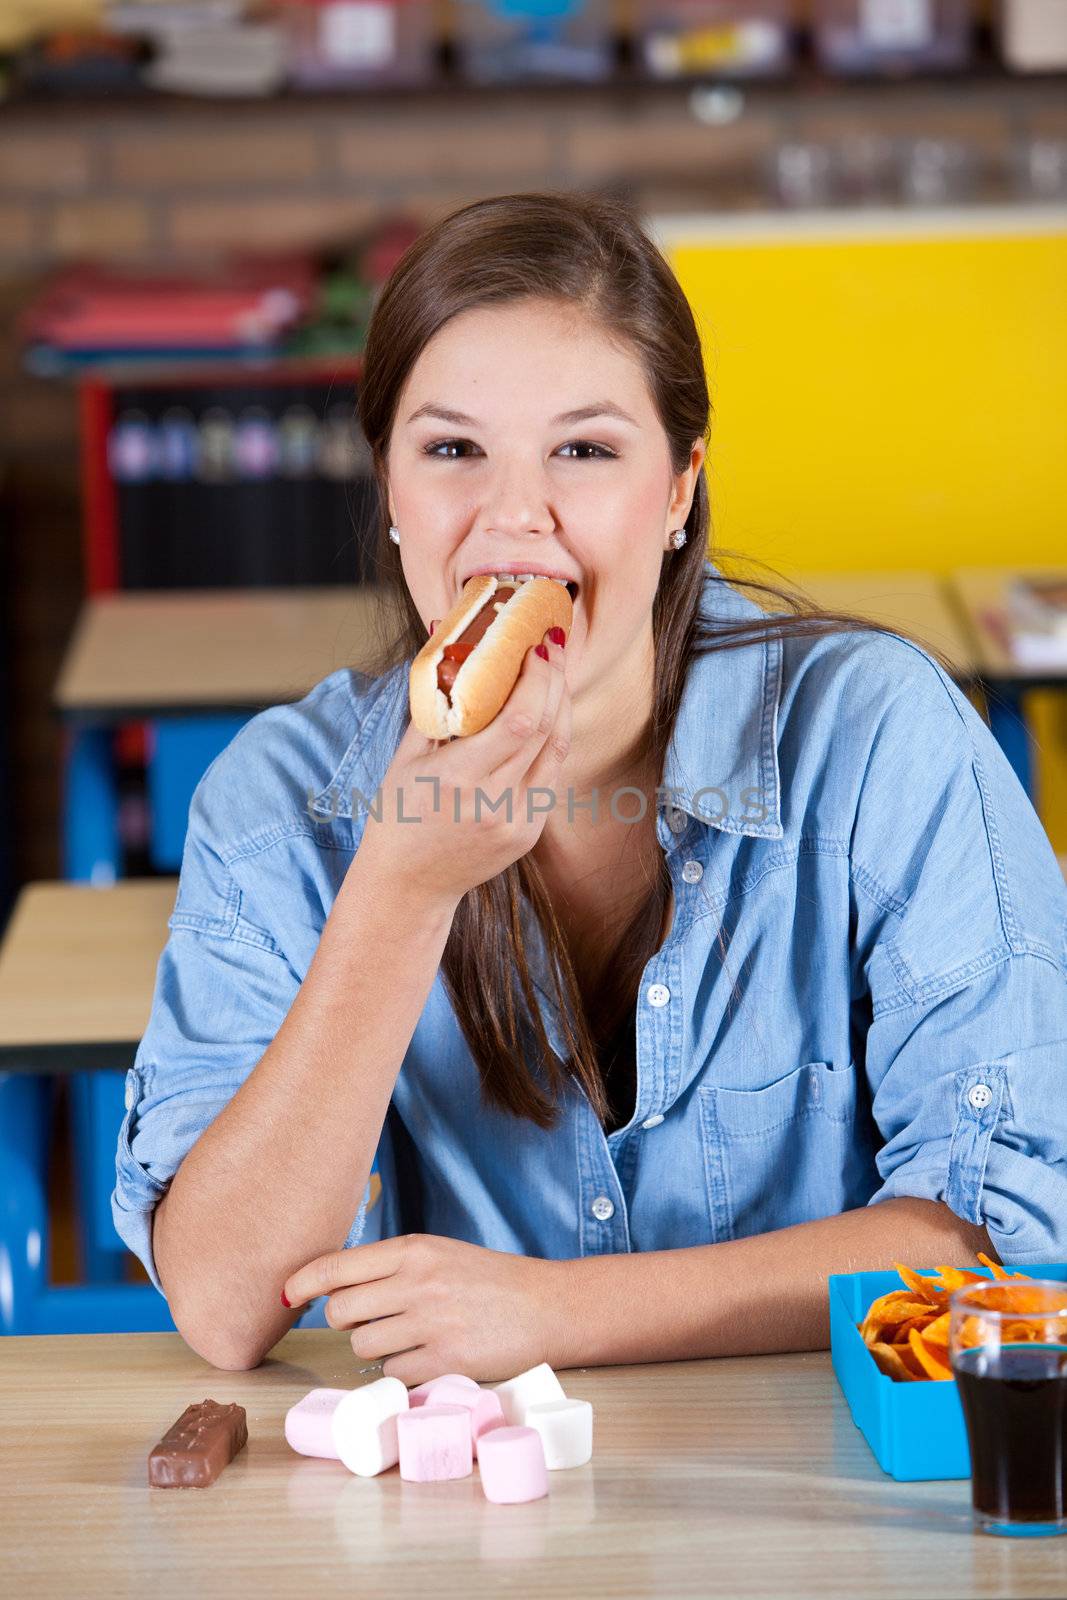 Eating a hotdog by Fotosmurf